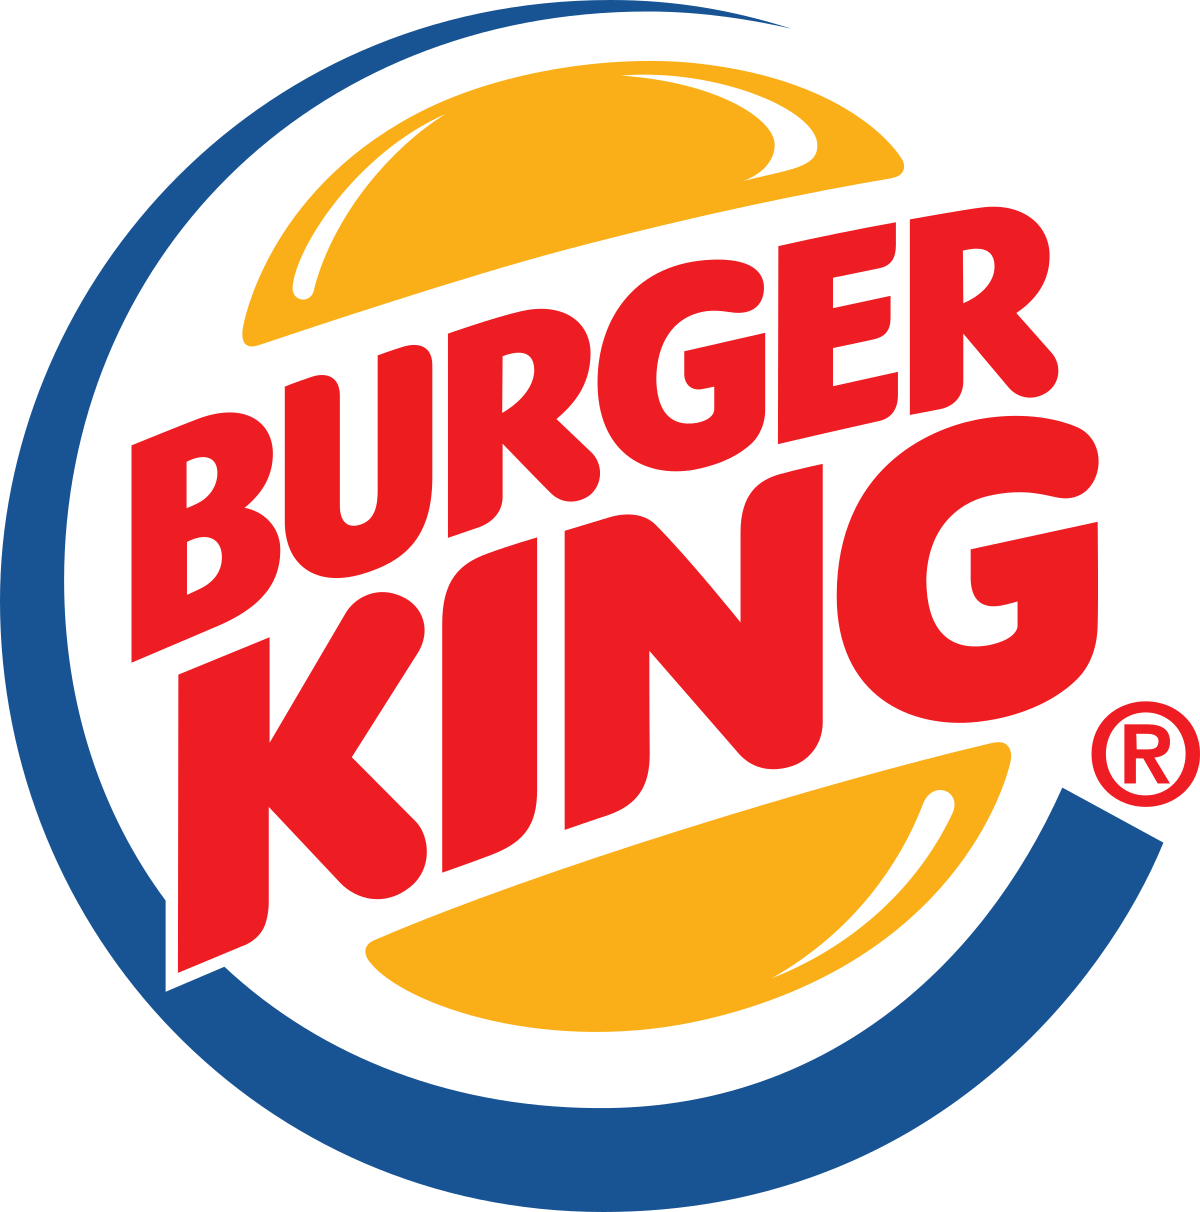 Wikipedia.org Logo - Burger King